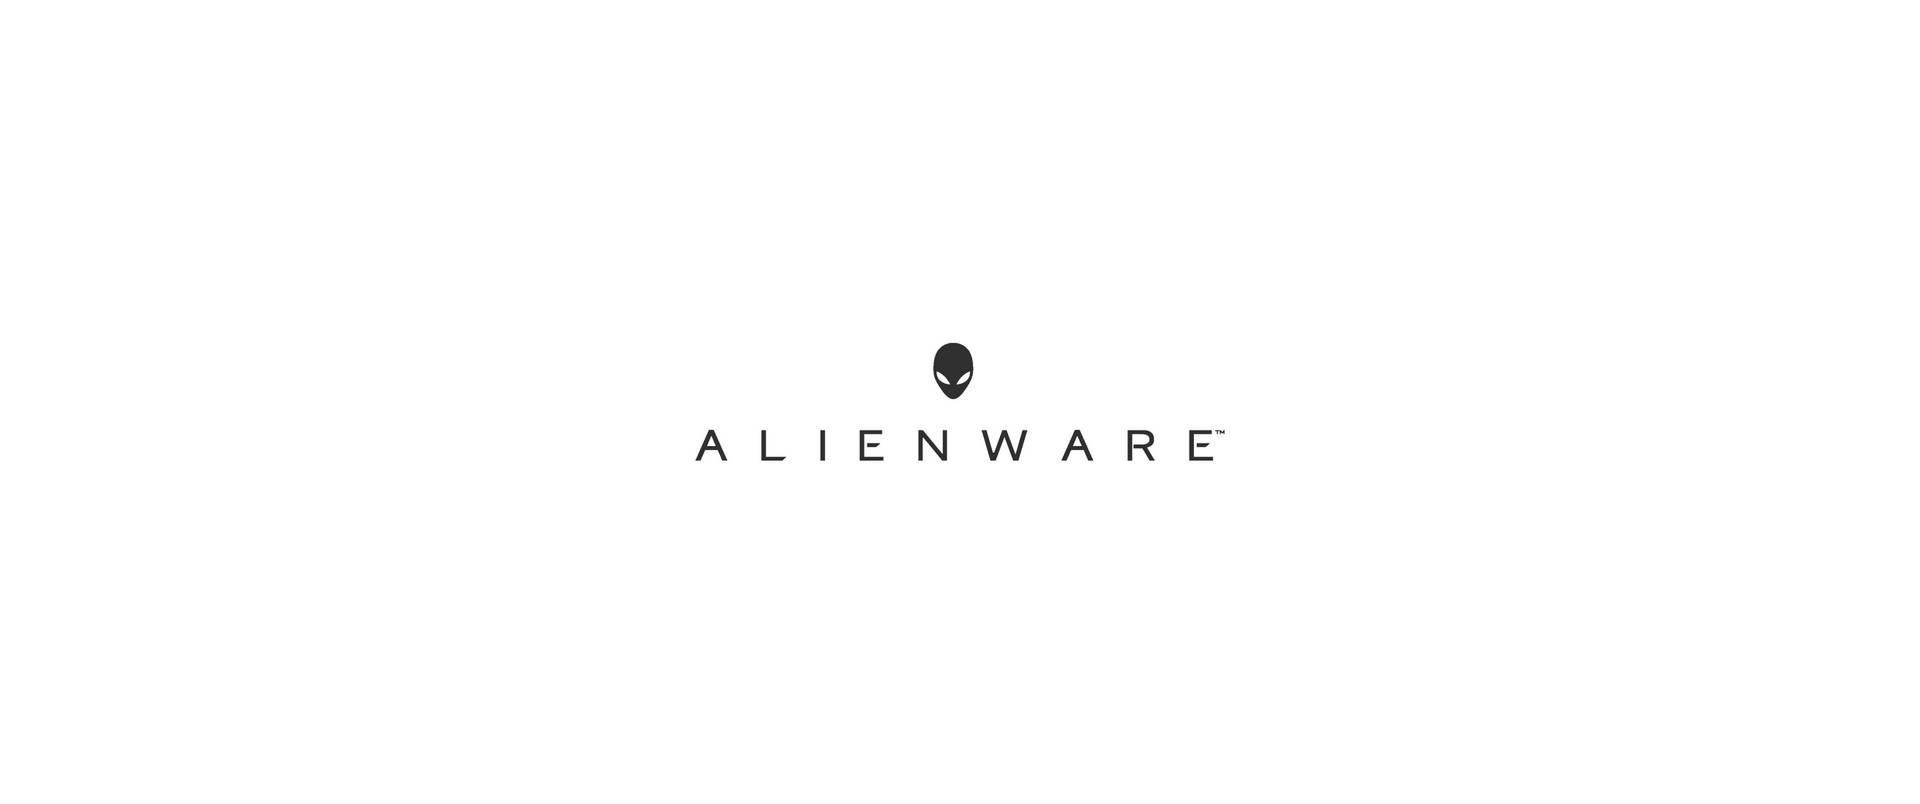 Logotiposimple De Alienware En Color Blanco. Fondo de pantalla